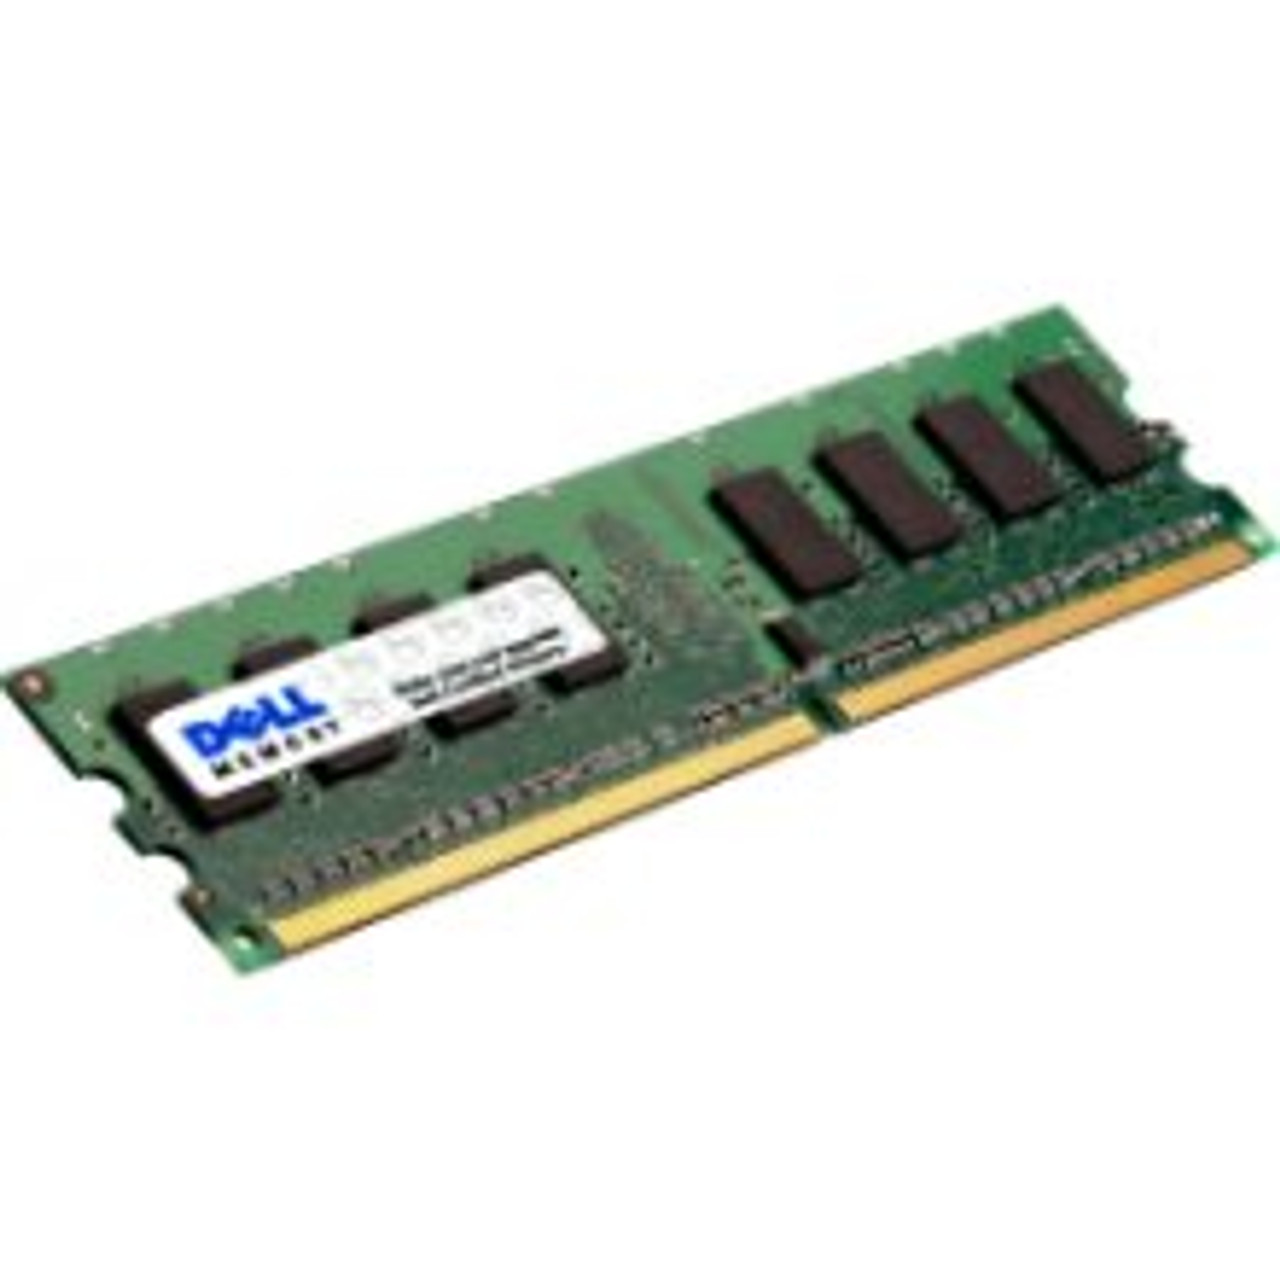 DELL SNP9J5WFC/4G 4gb (1x4gb) 1333 Mhz Pc3-10600 240-pin Cl9 Dual Rank Ddr3 Fully Buffered Ecc Registered Sdram Dimm Memory Module For Poweredge Server